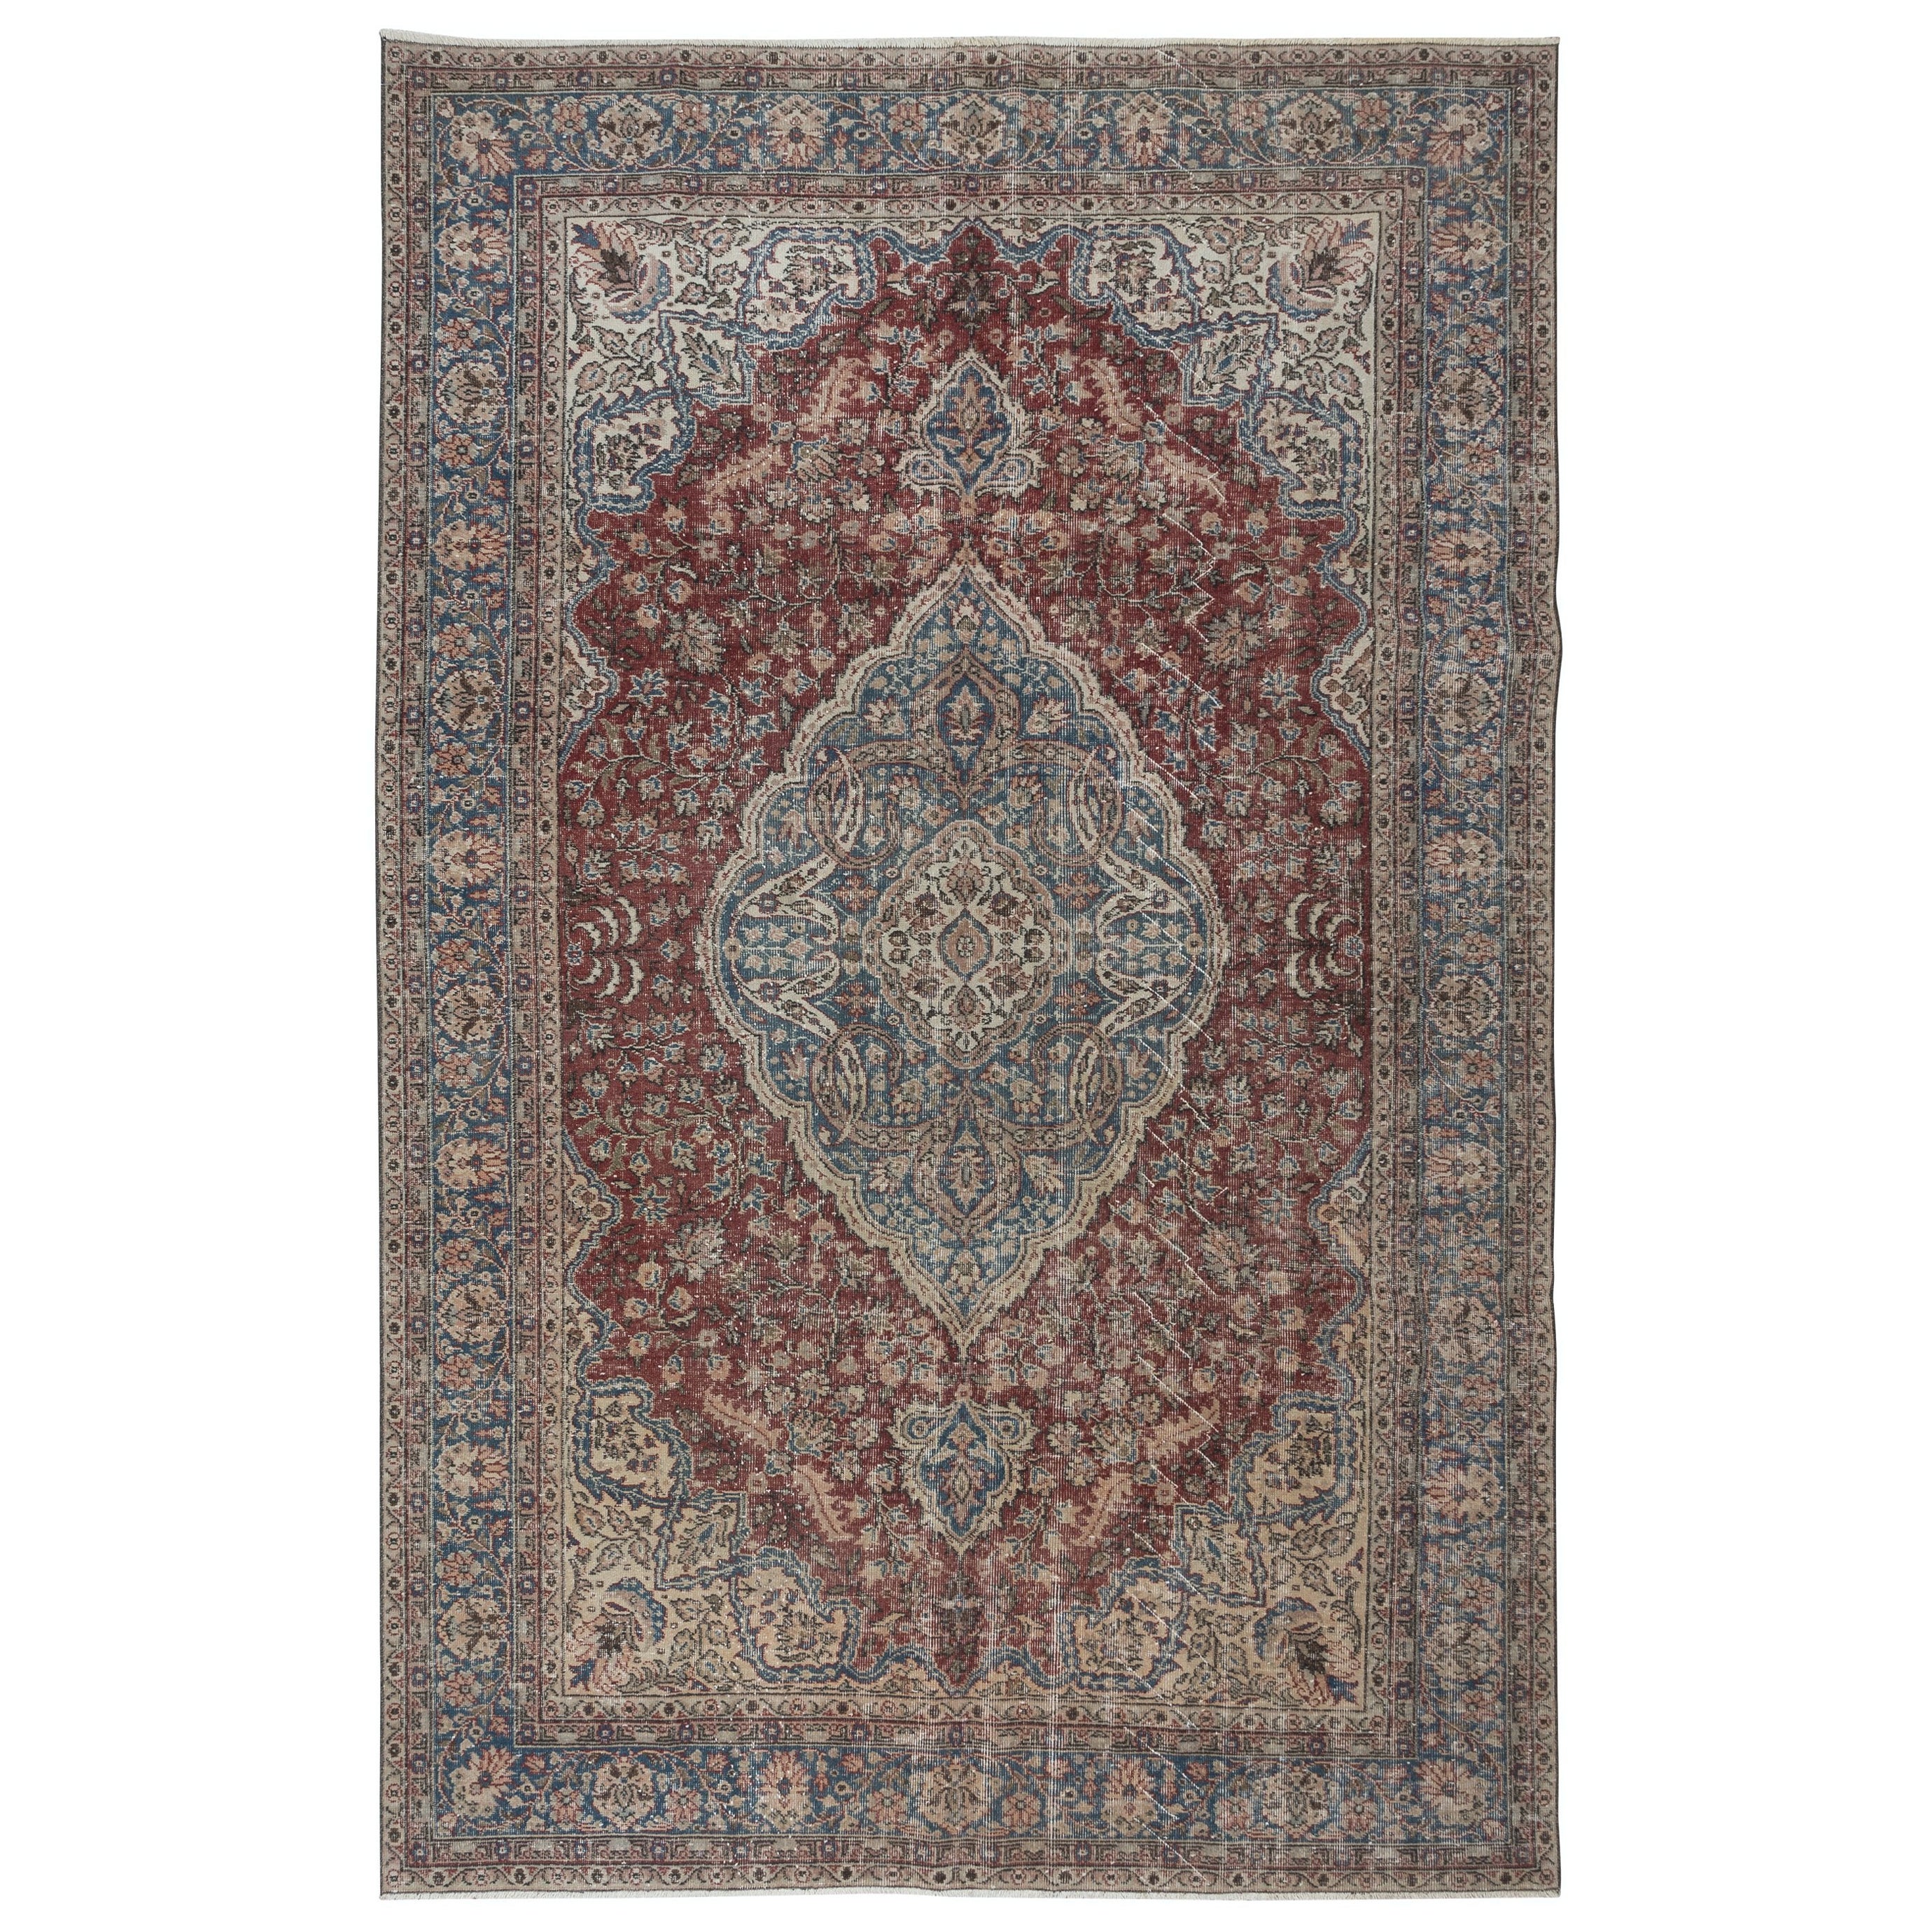 6.8x10.5 Ft Traditional Ottoman Rug, Circa 1950, Handmade Turkish Vintage Carpet